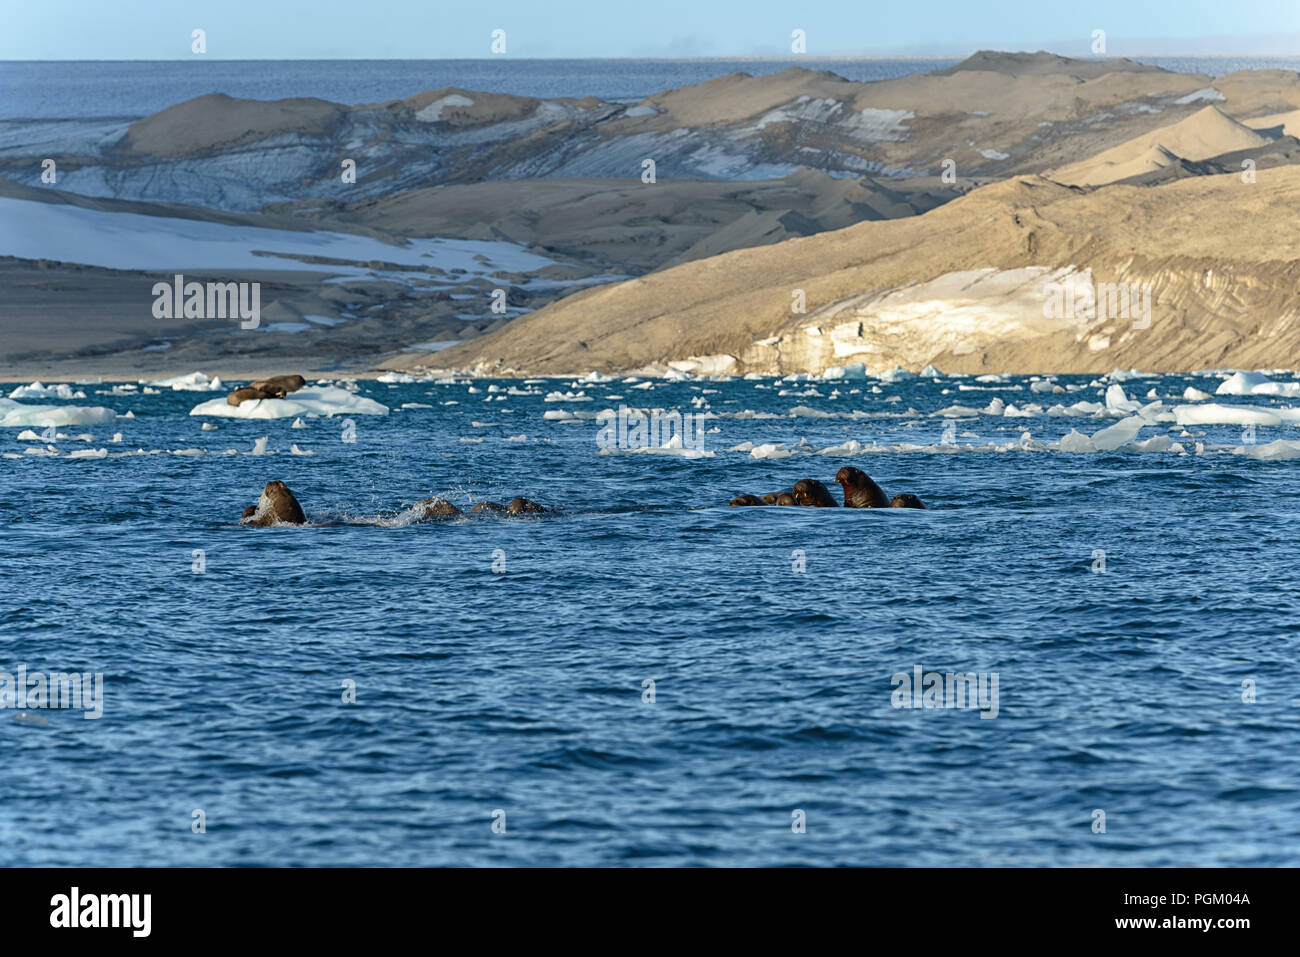 Group of walruses swimming in sea, Nordaustlandet, Svalbard, Norway Stock Photo